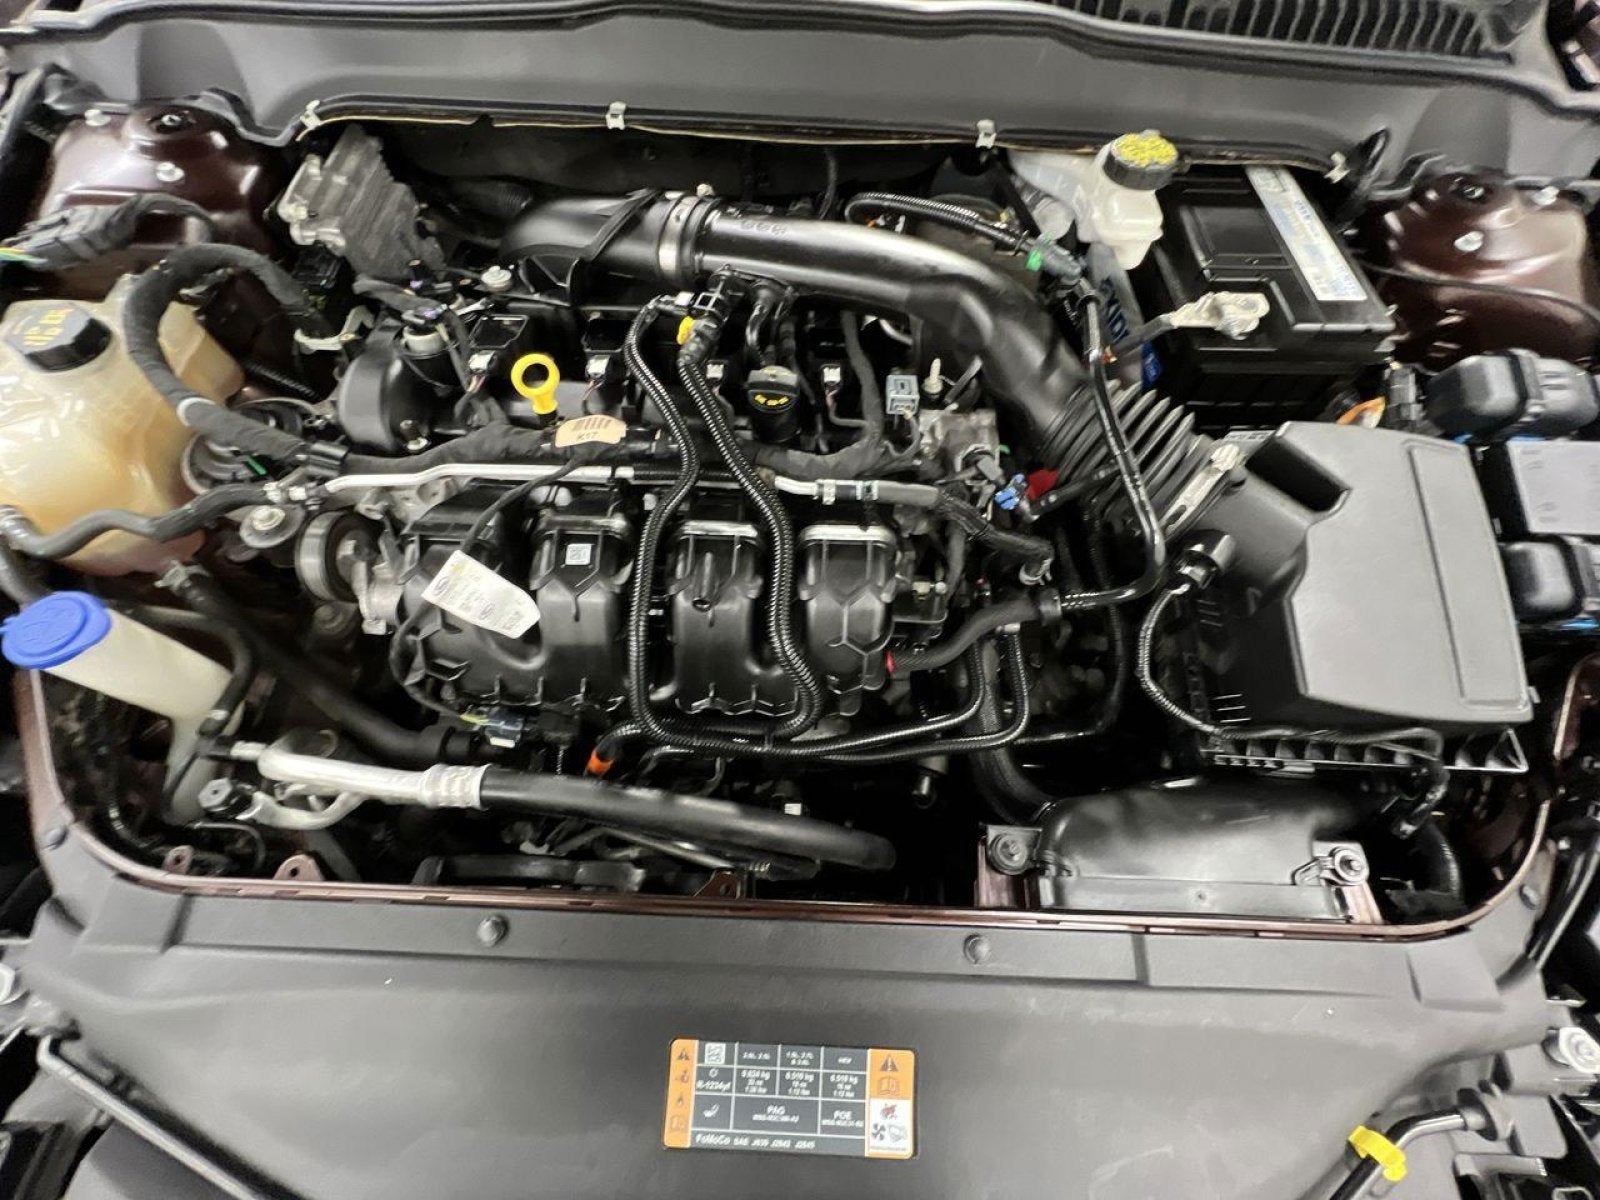 2019 Ford Fusion Titanium